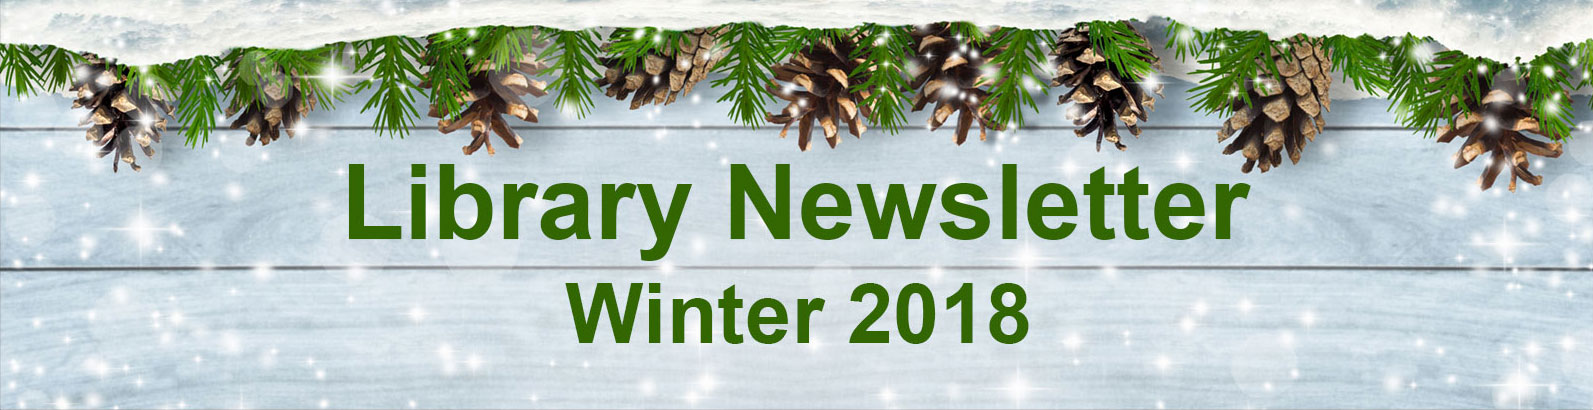 2018 Winter Newsletter banner